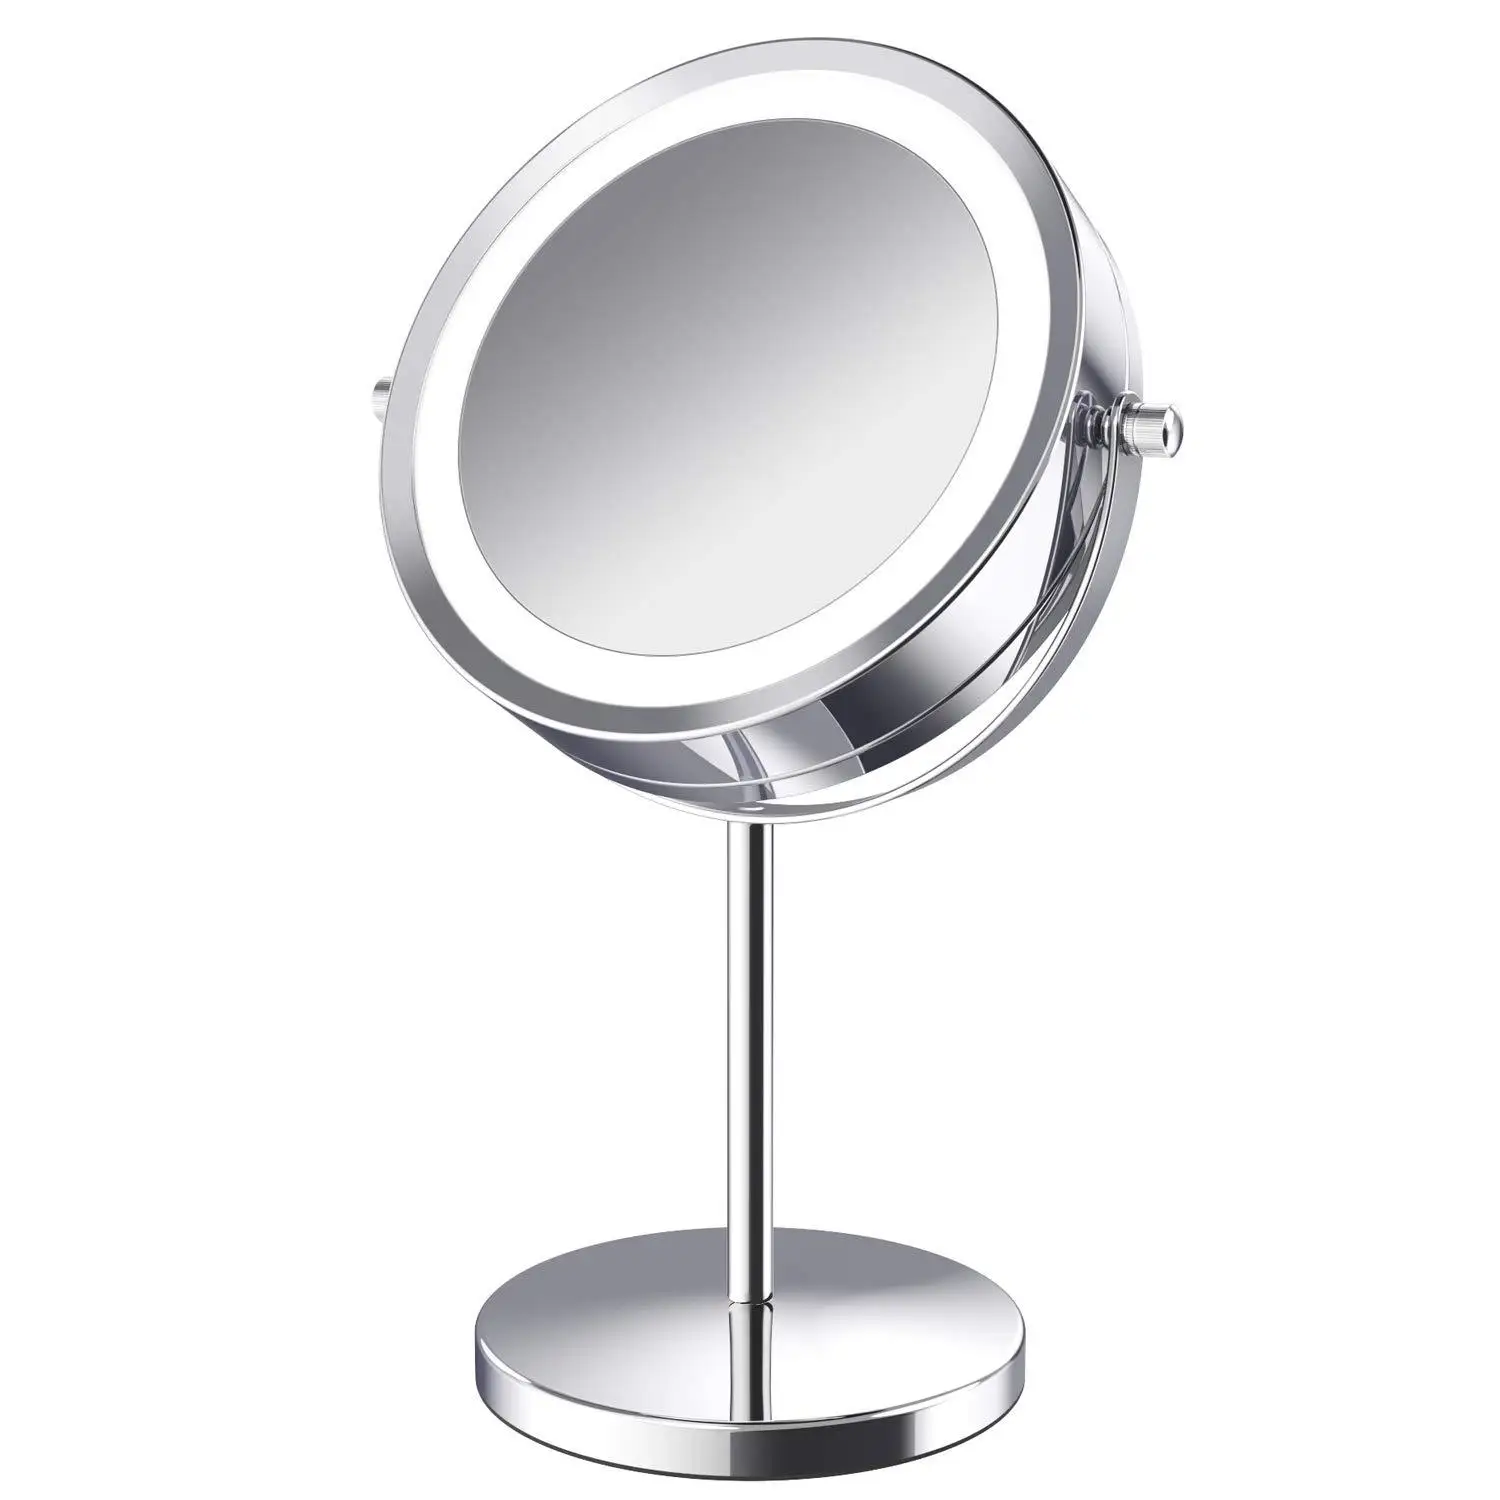 

10X увеличительное светодиодный зеркало для макияжа с светильник косметические зеркала круглый Форма Desktop косметическое двусторонний зерка...